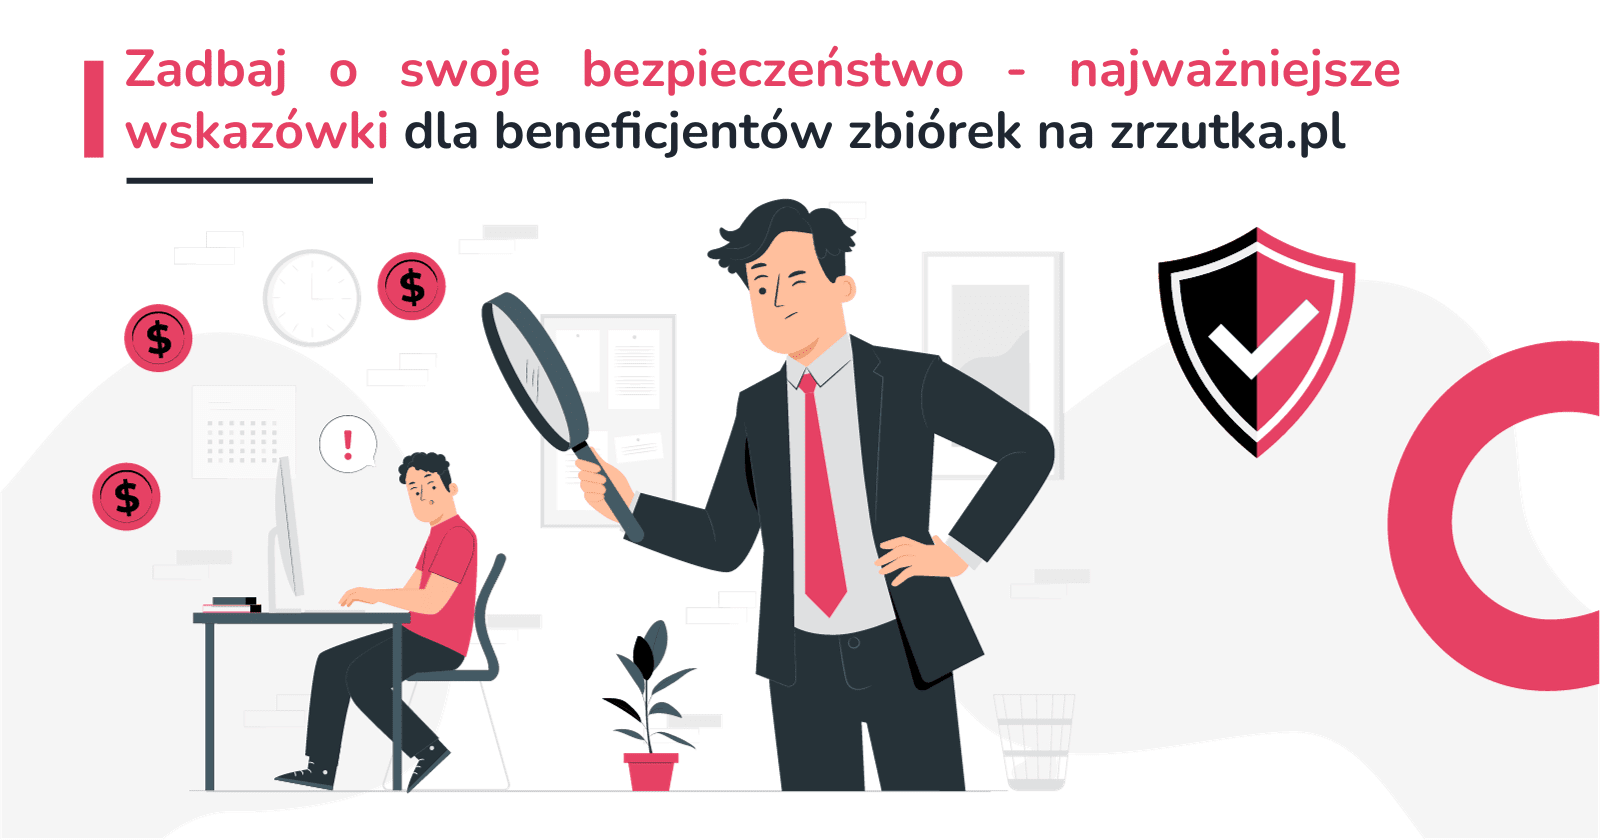 Zadbaj o swoje bezpieczeństwo - najważniejsze wskazówki dla beneficjentów zbiórek na zrzutka.pl